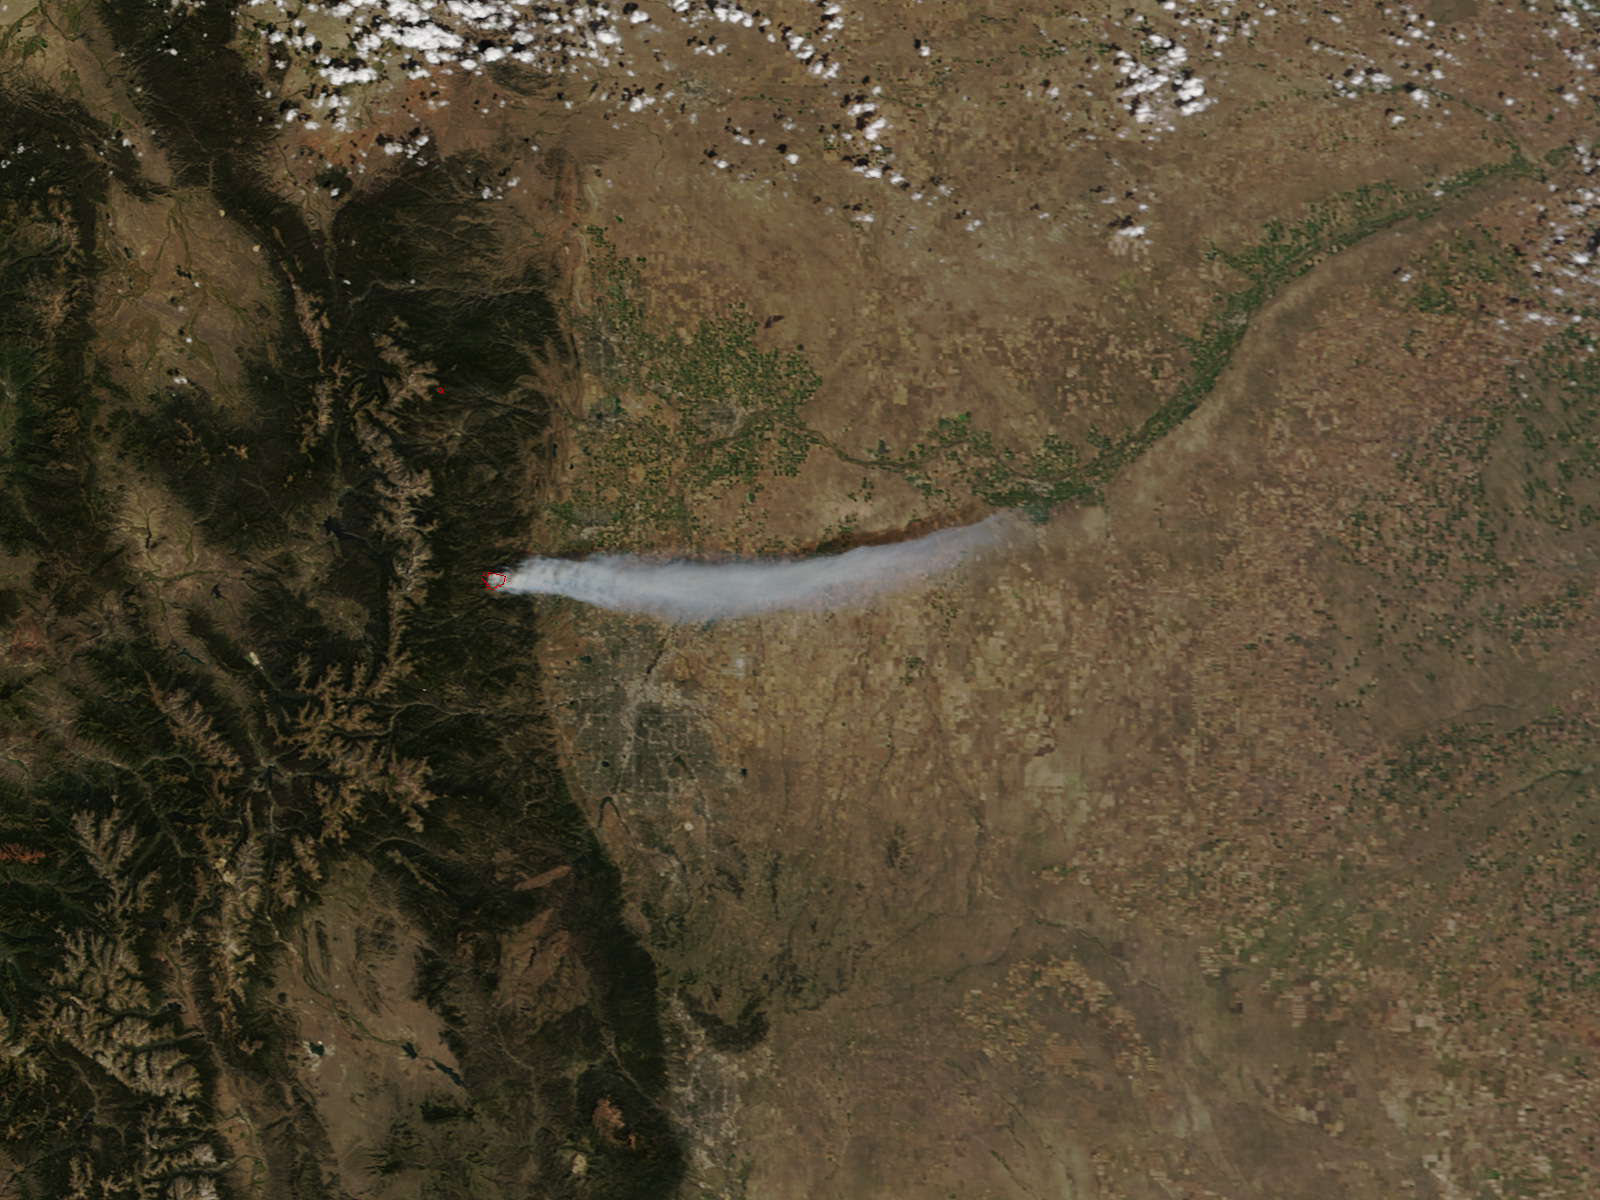 Wildfire burns in Fourmile Canyon near Denver, Colorado on 7 September 2010